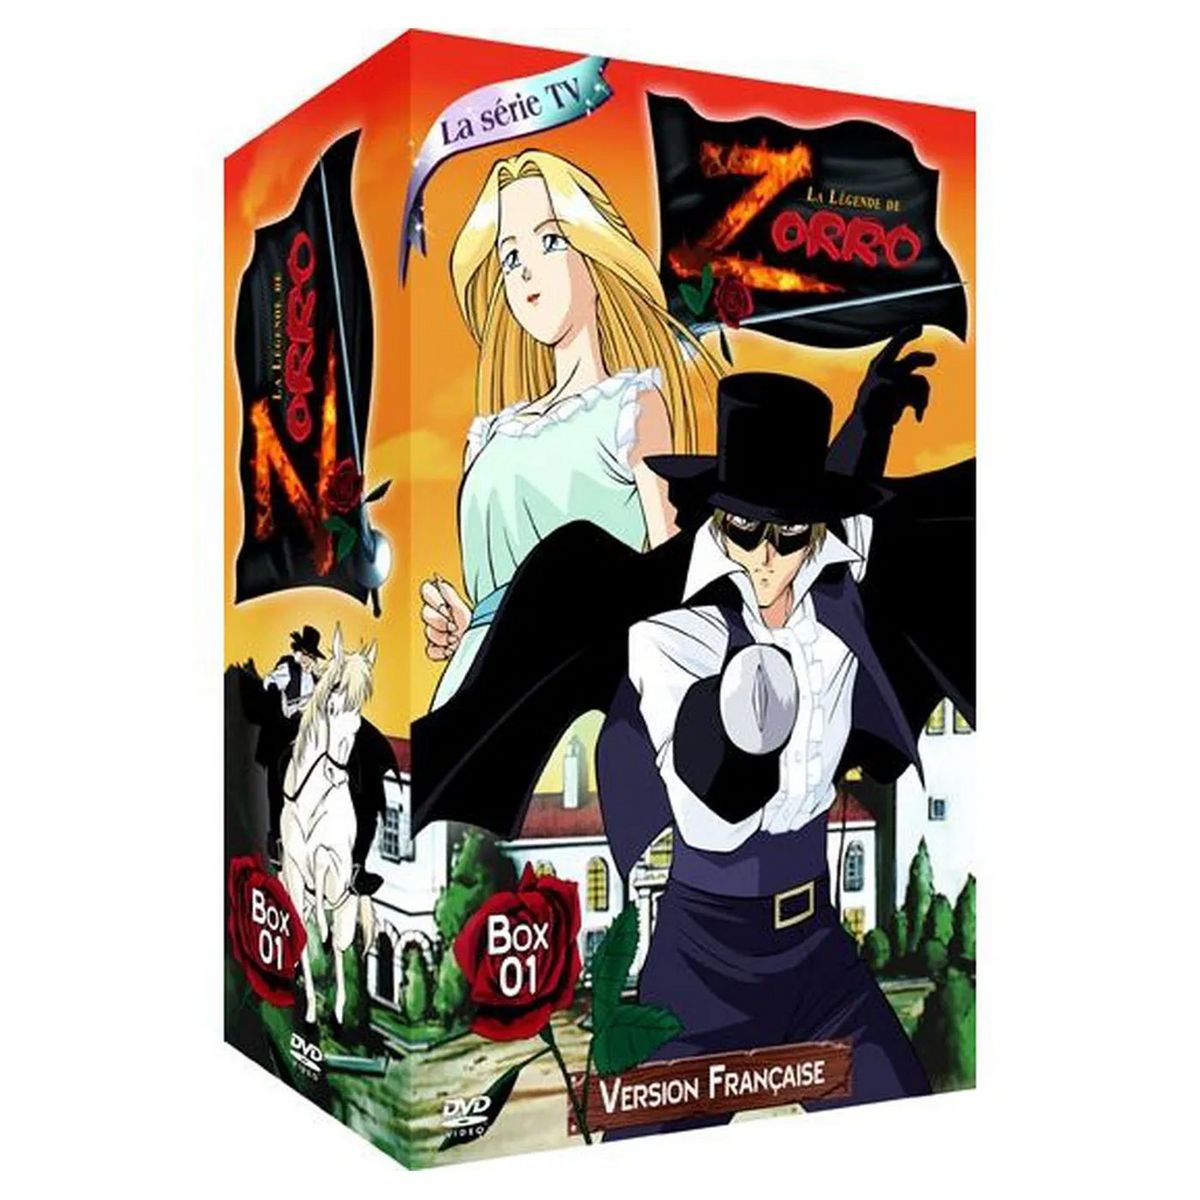 Zorro Vol 1/4 DVD